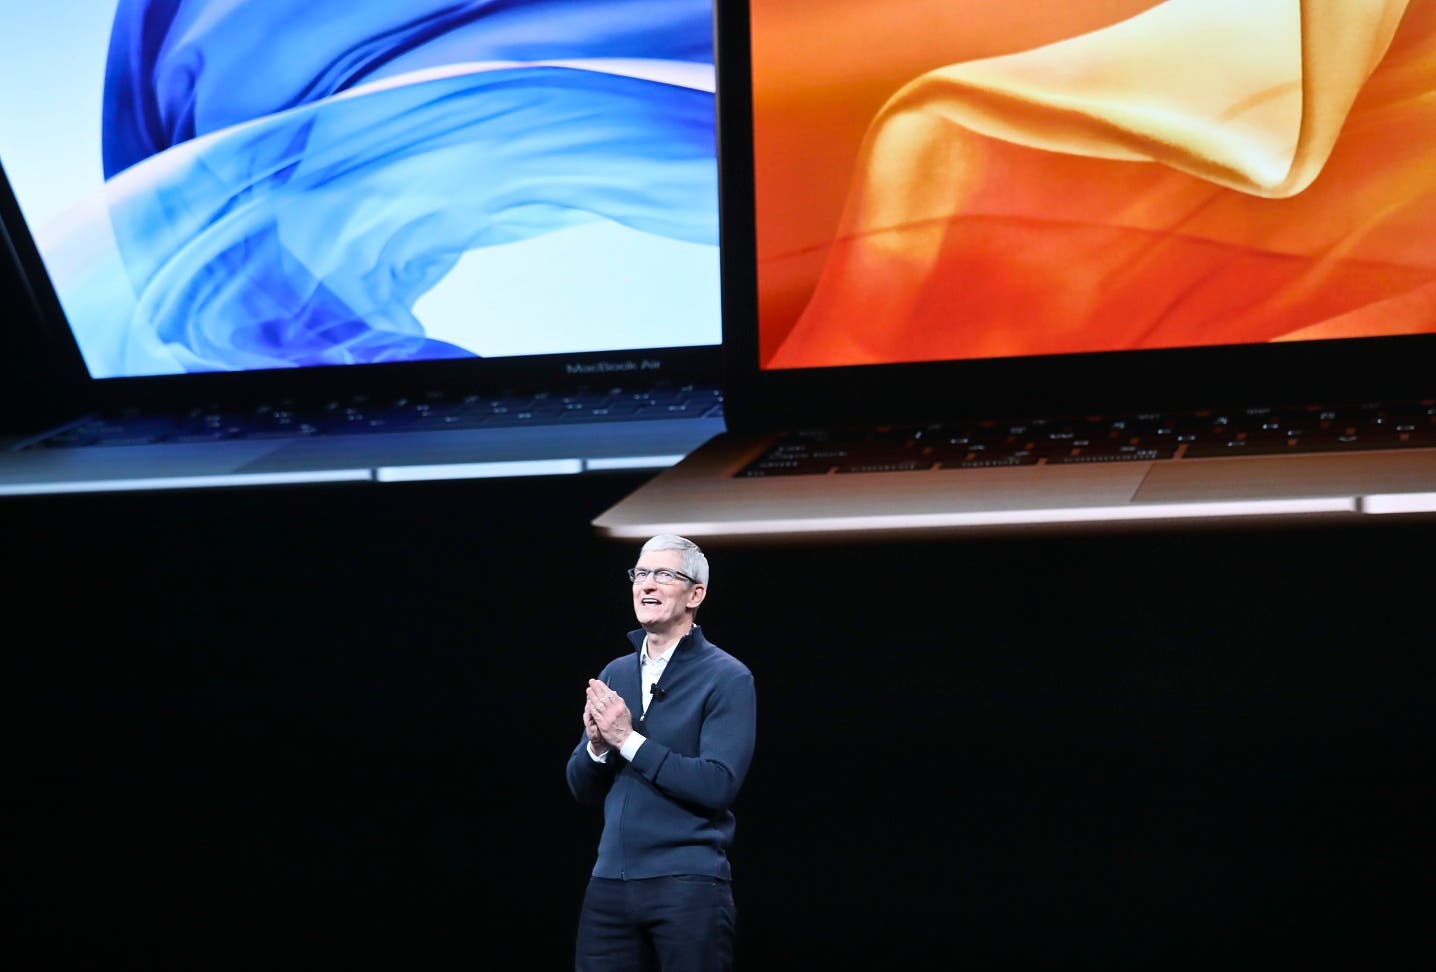 Apple anuncia nuevo MacBook Air con pantalla retina y de aluminio reciclado